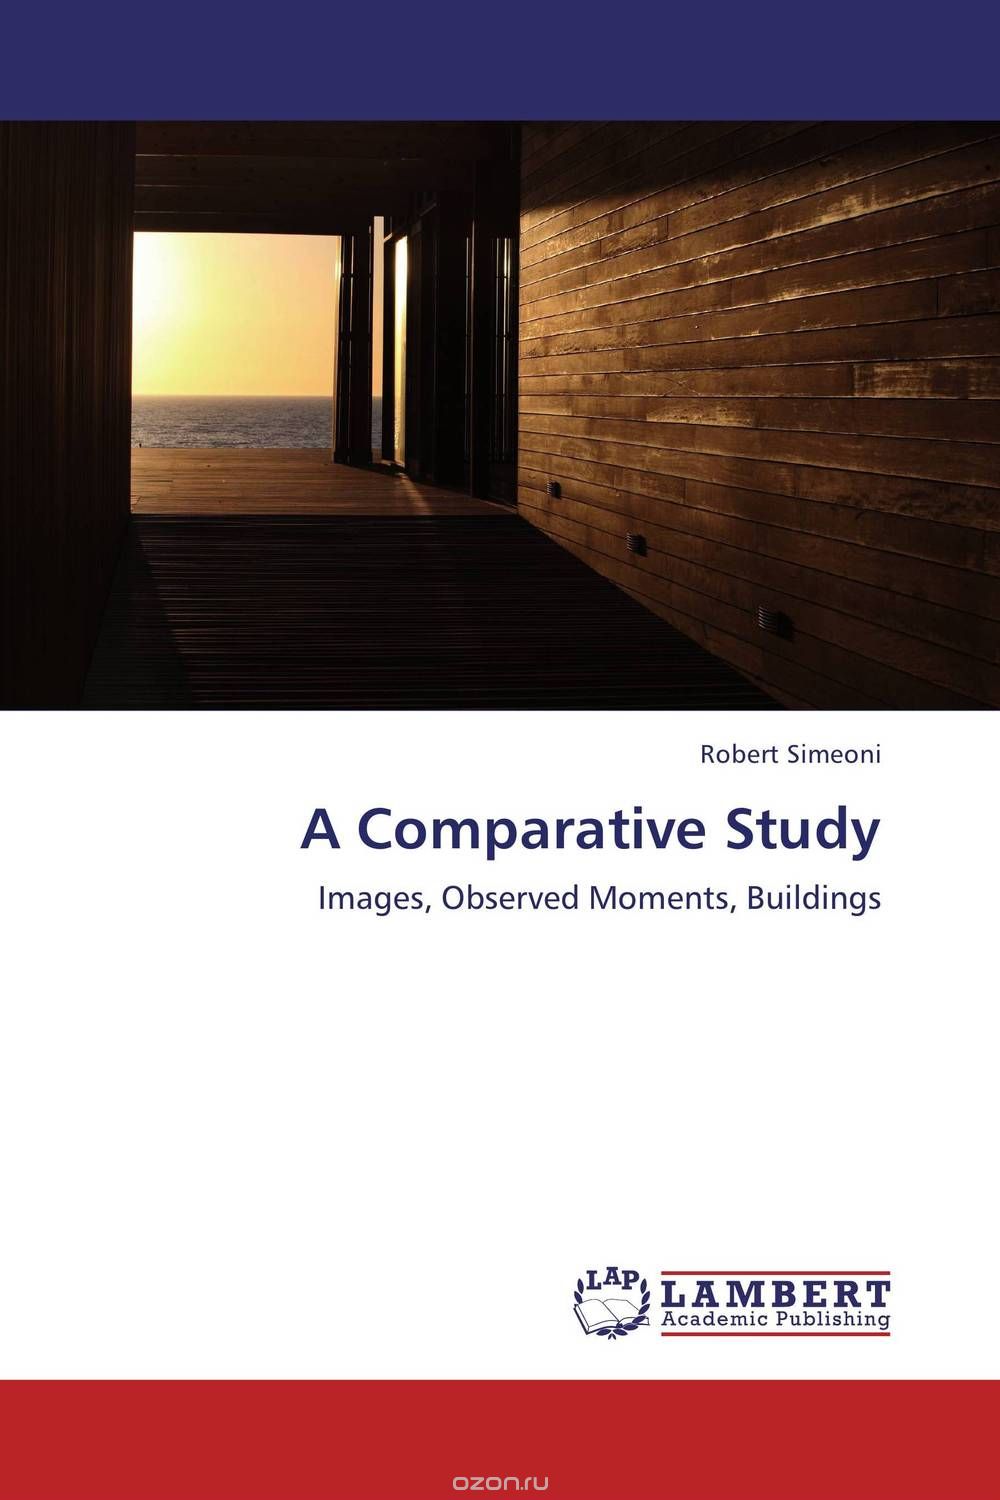 Скачать книгу "A Comparative Study"